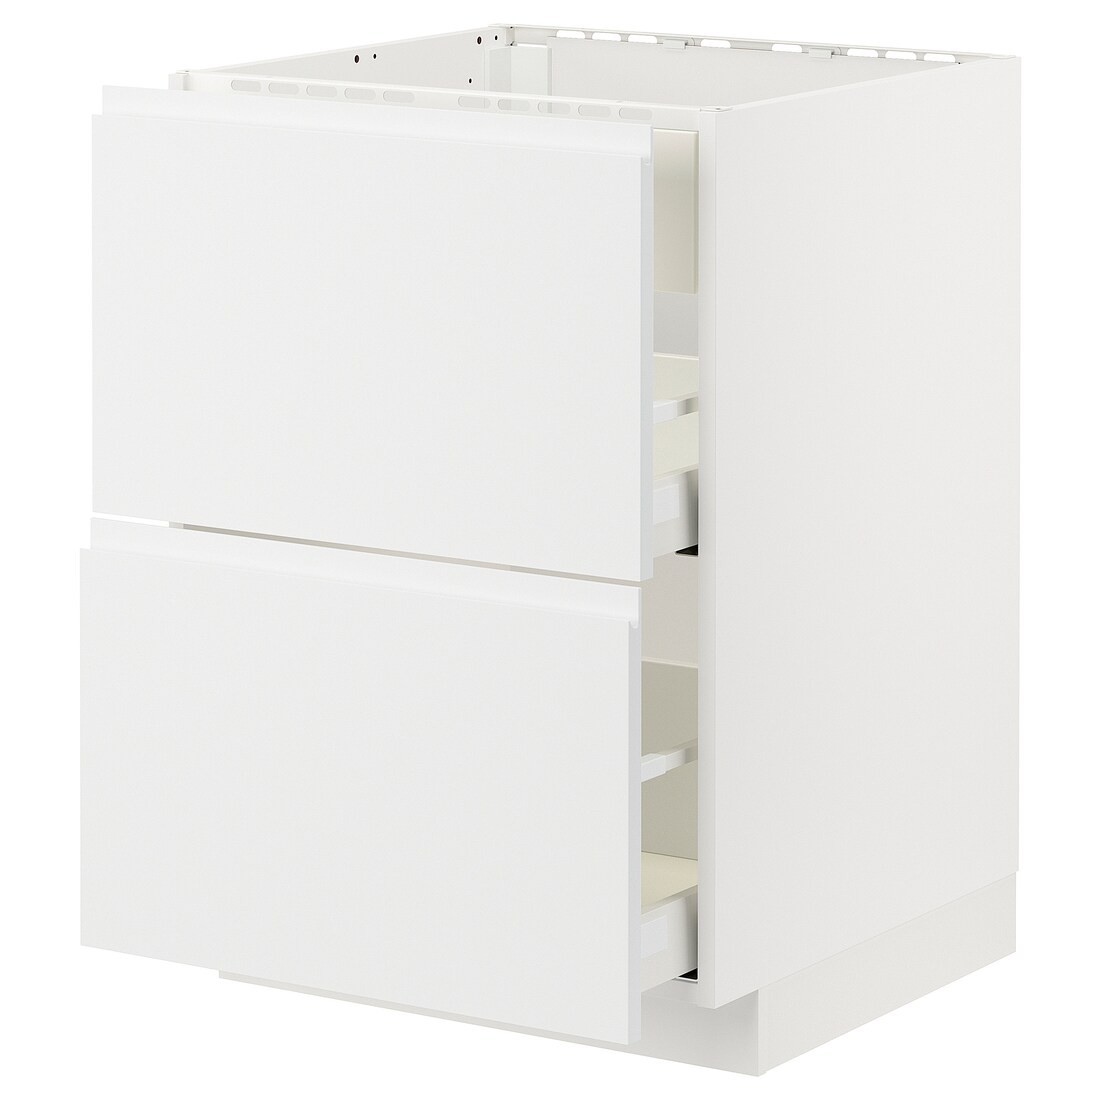 IKEA METOD МЕТОД / MAXIMERA МАКСИМЕРА Напольный шкаф для варочной панели / вытяжка с ящиком, белый / Voxtorp матовый белый, 60x60 см 99477809 | 994.778.09